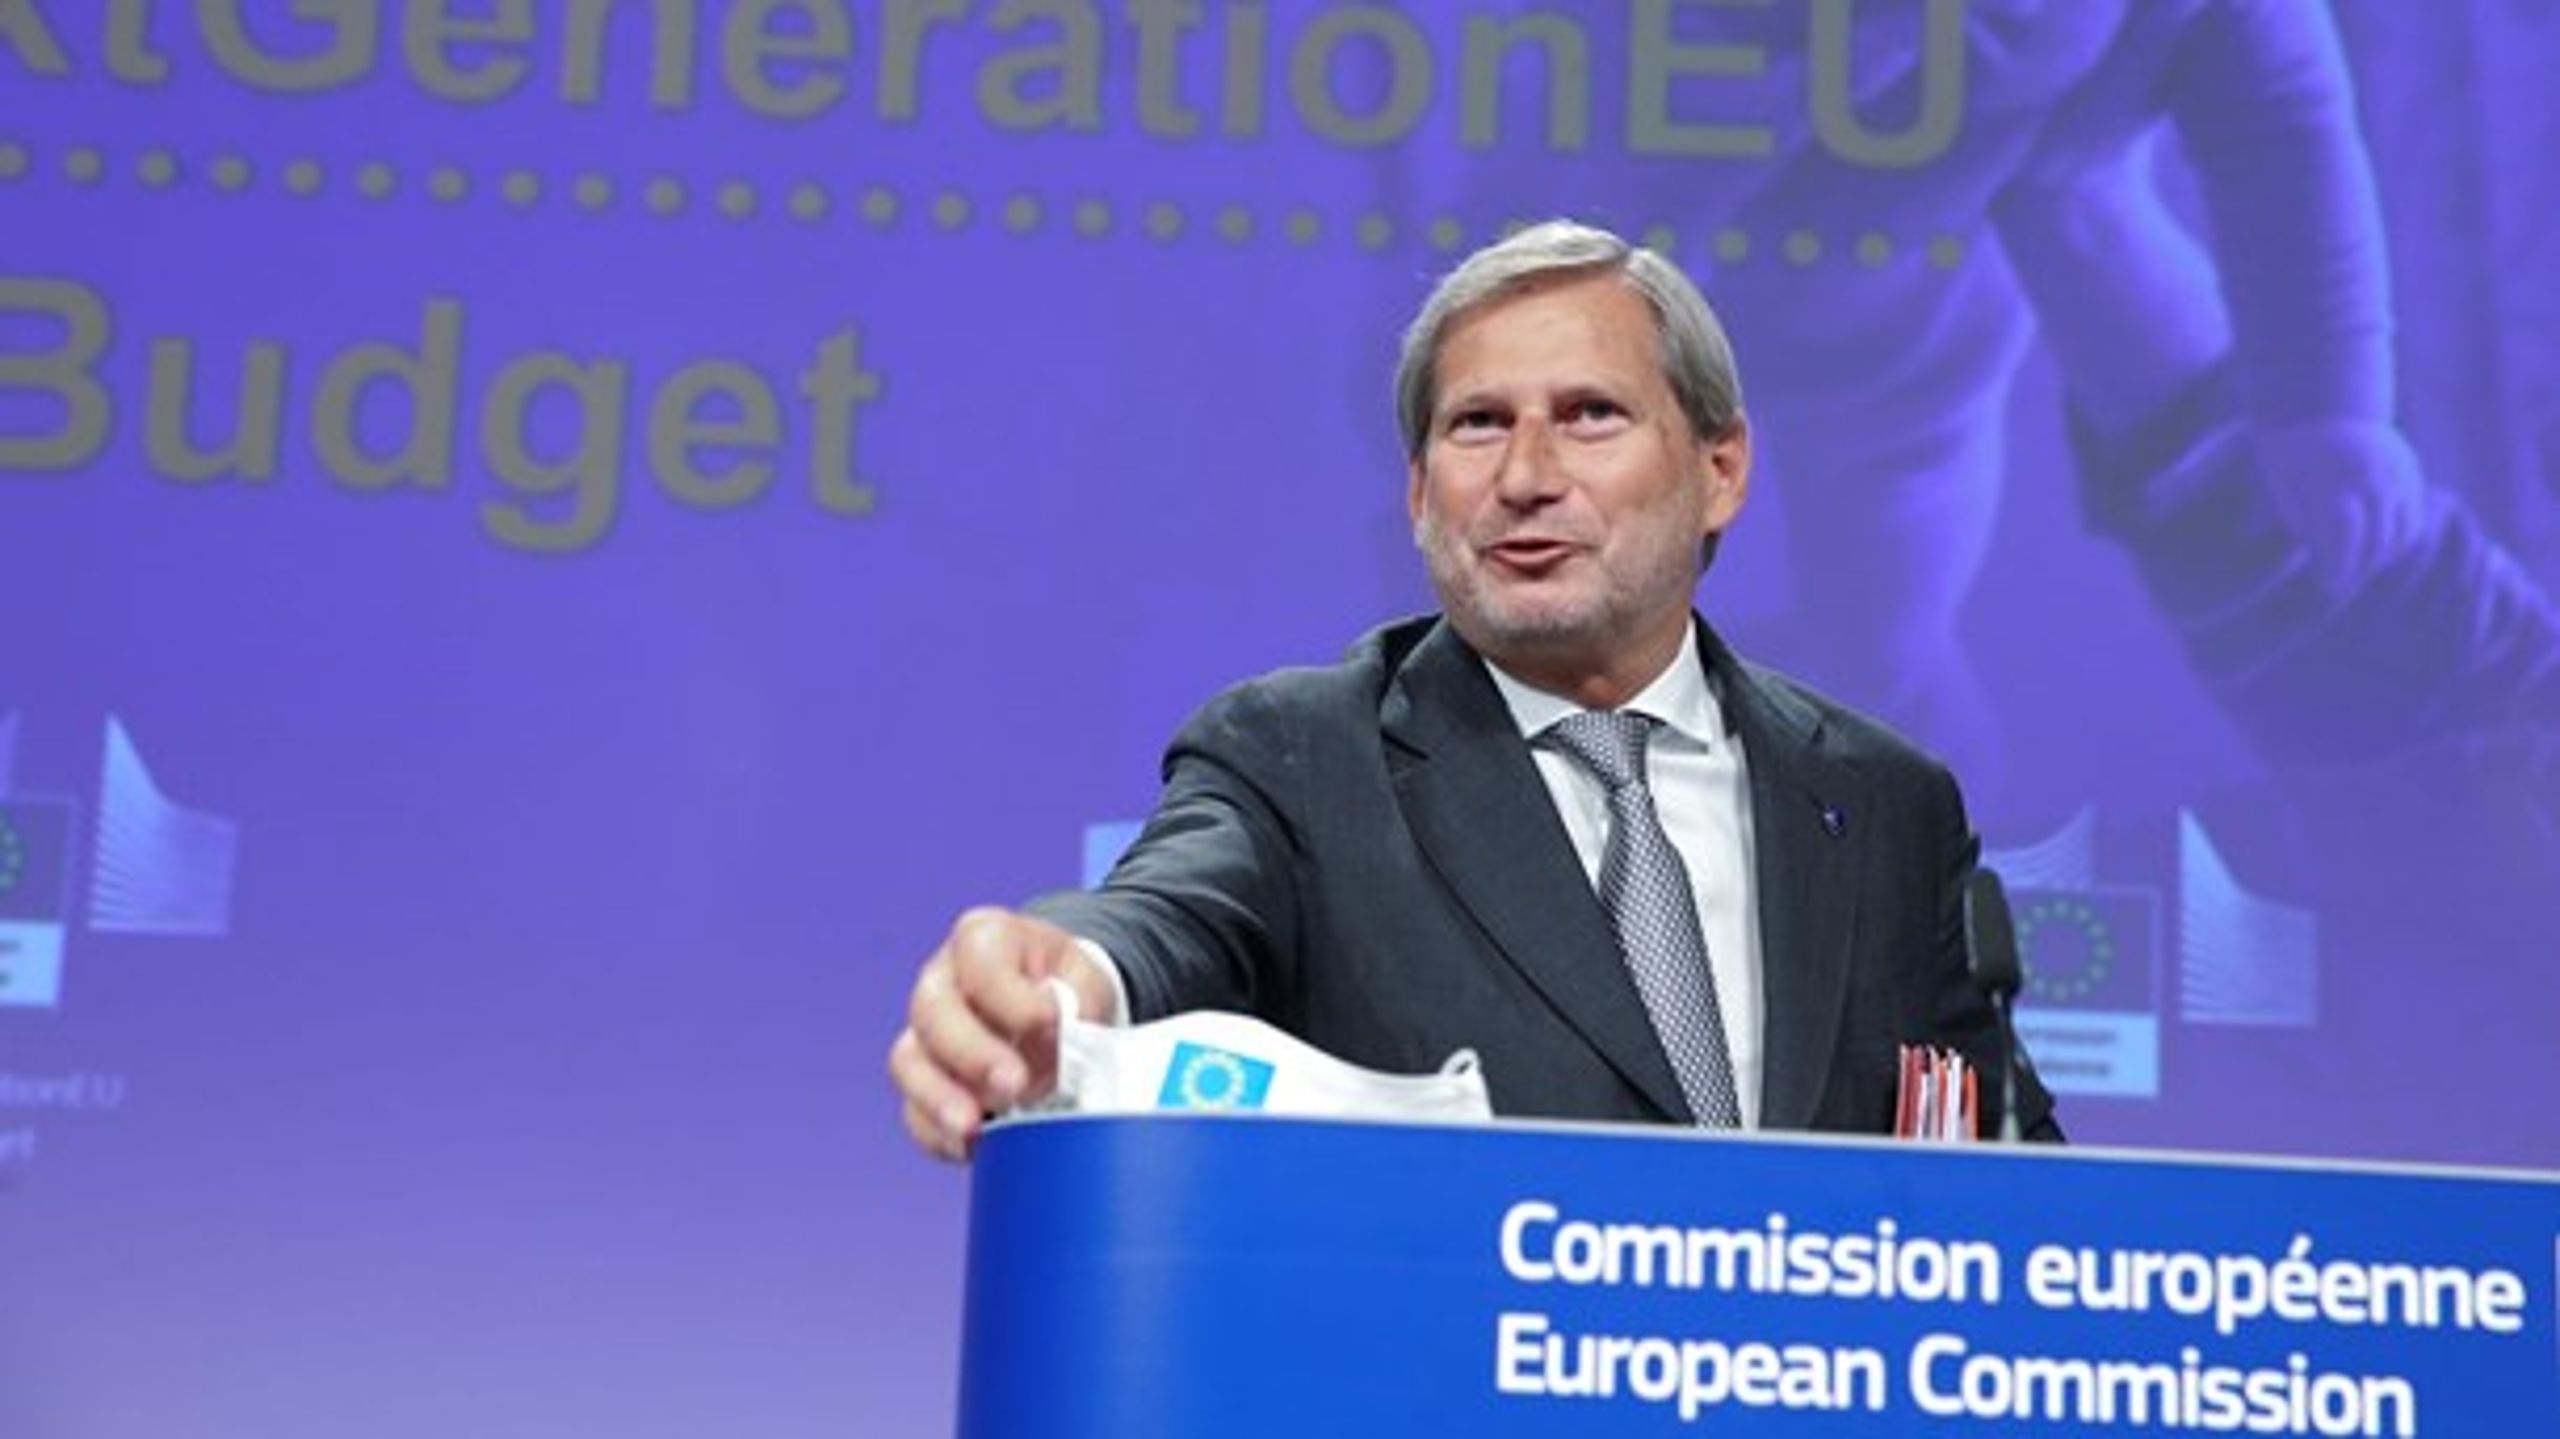 Det er EU's budgetkommissær, Johannes Hahn, der skal forsøge at sælge det forhøjede EU-budget til de 27 EU-lande.